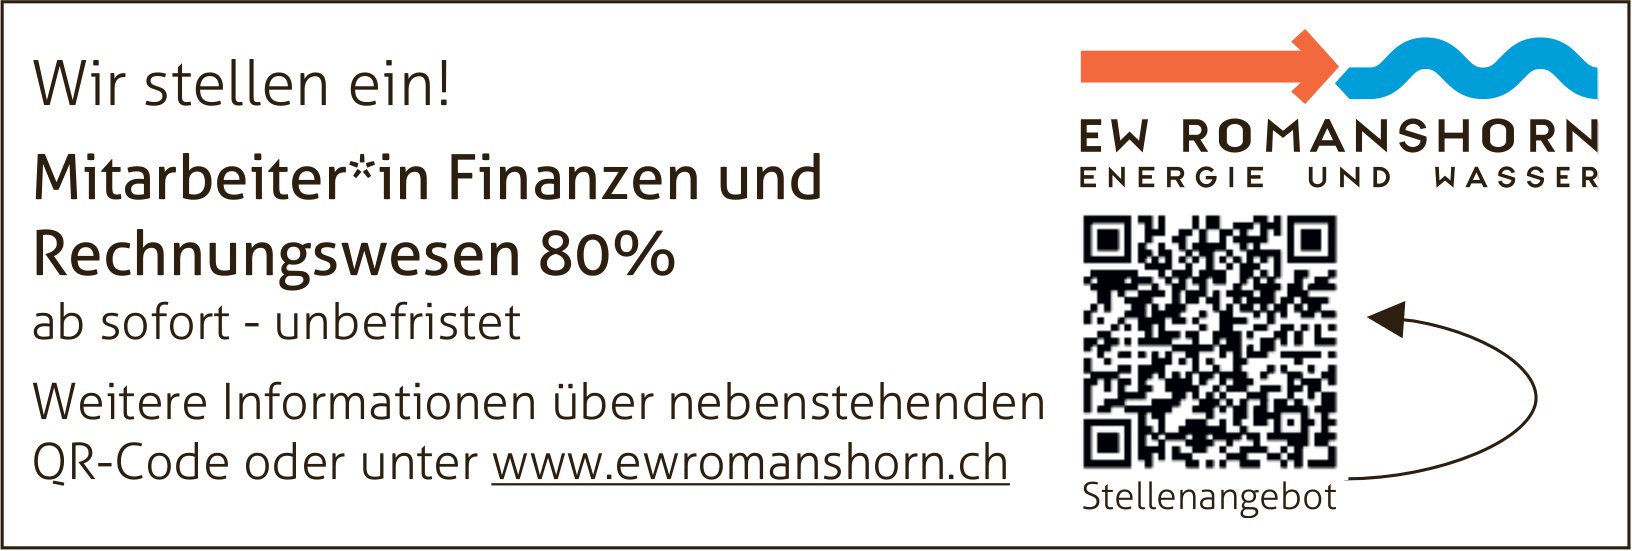 EW Romanshorn Energie und Wasser, Mitarbeiter*in Finanzen und ab sofort - unbefristet Wir stellen ein! Rechnungswesen 80%